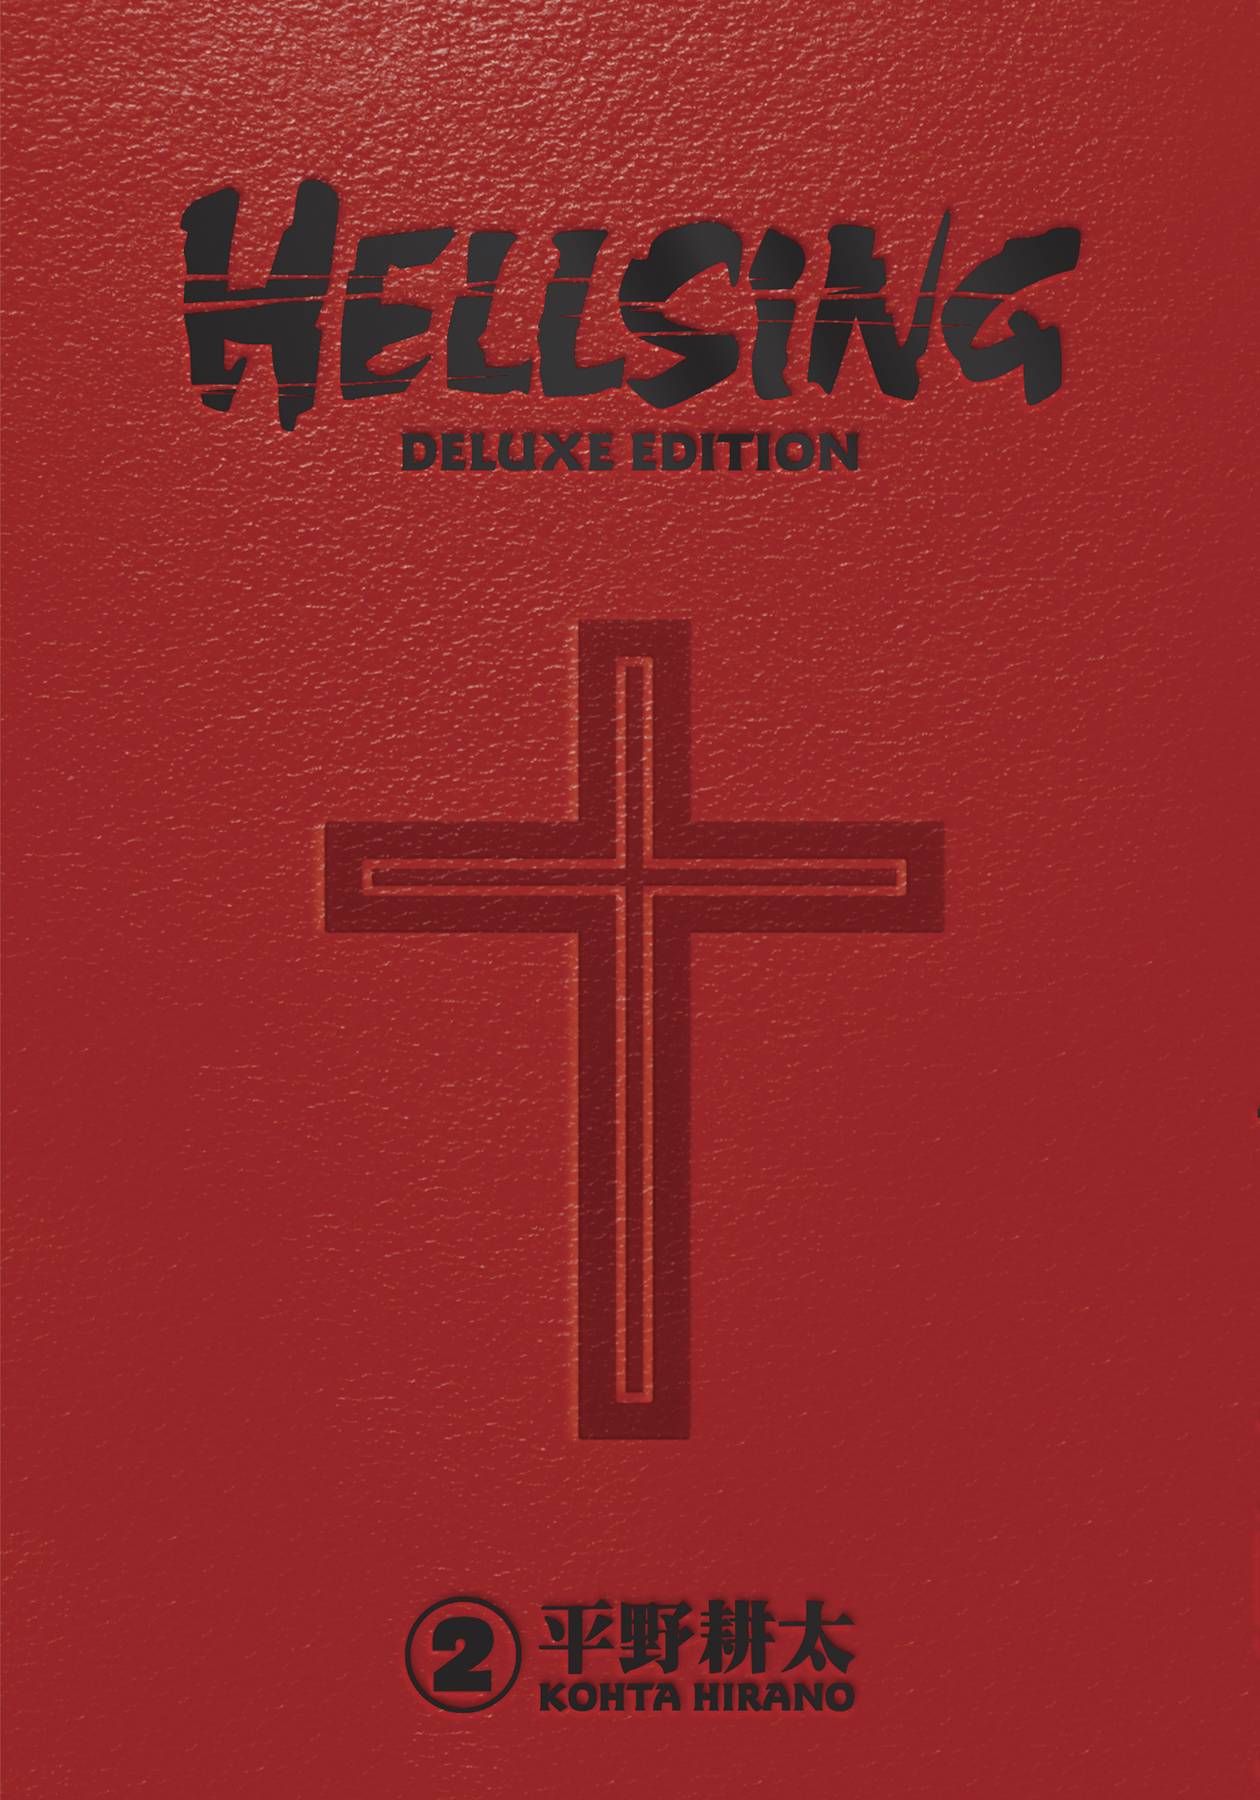 HELLSING DELUXE EDITION HC VOL 02 (MR)